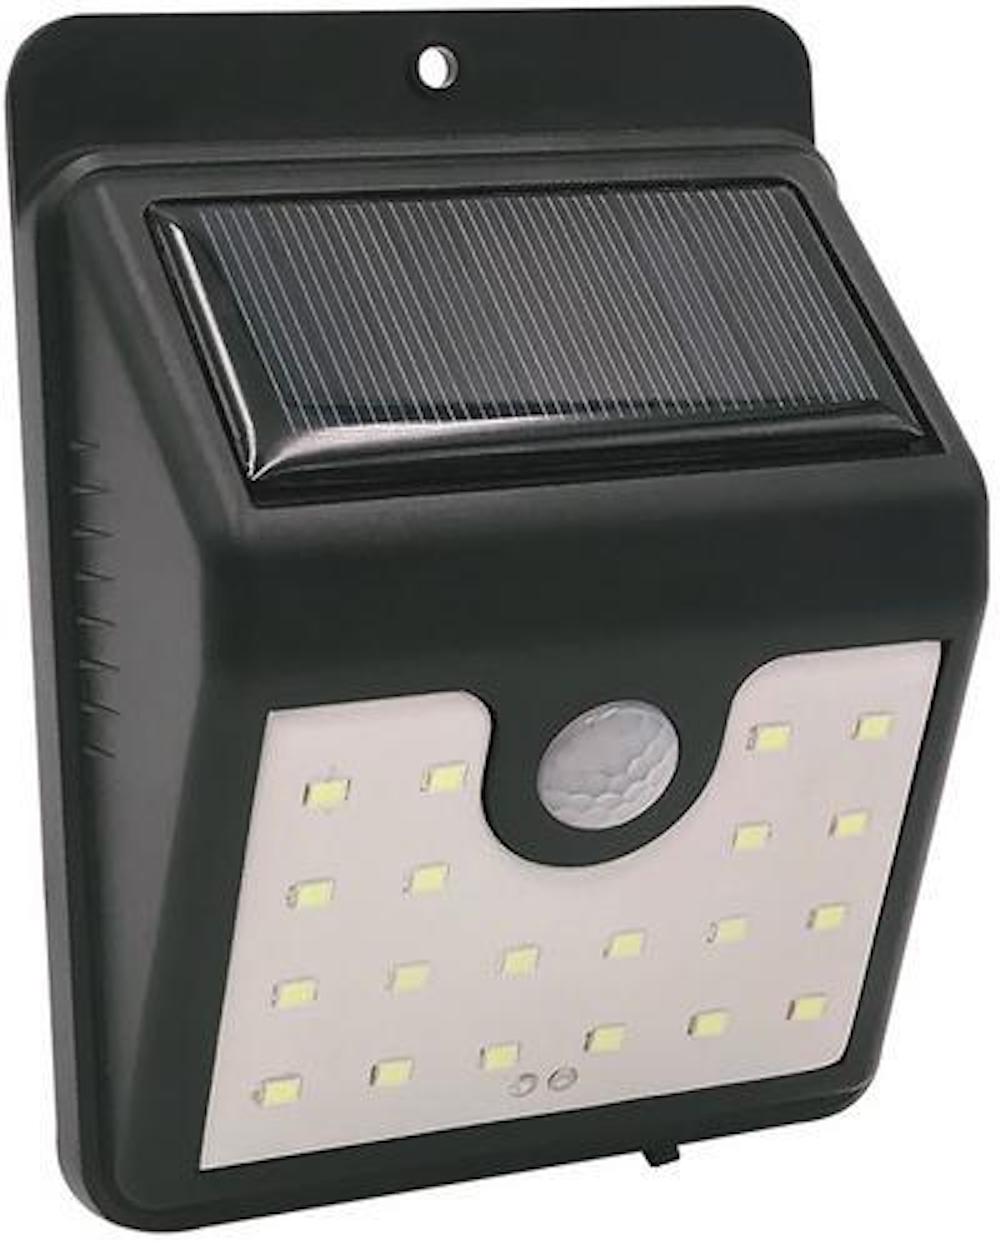 SuperSparSet 2x BERLIN Solarlampe mit automatischer Einschaltfunktion | HxBxT 9x4,5x11,5cm | 20 LEDs | Automatisches Schalten | Bewegungssensor | Gartenlampe, Rattanlampe